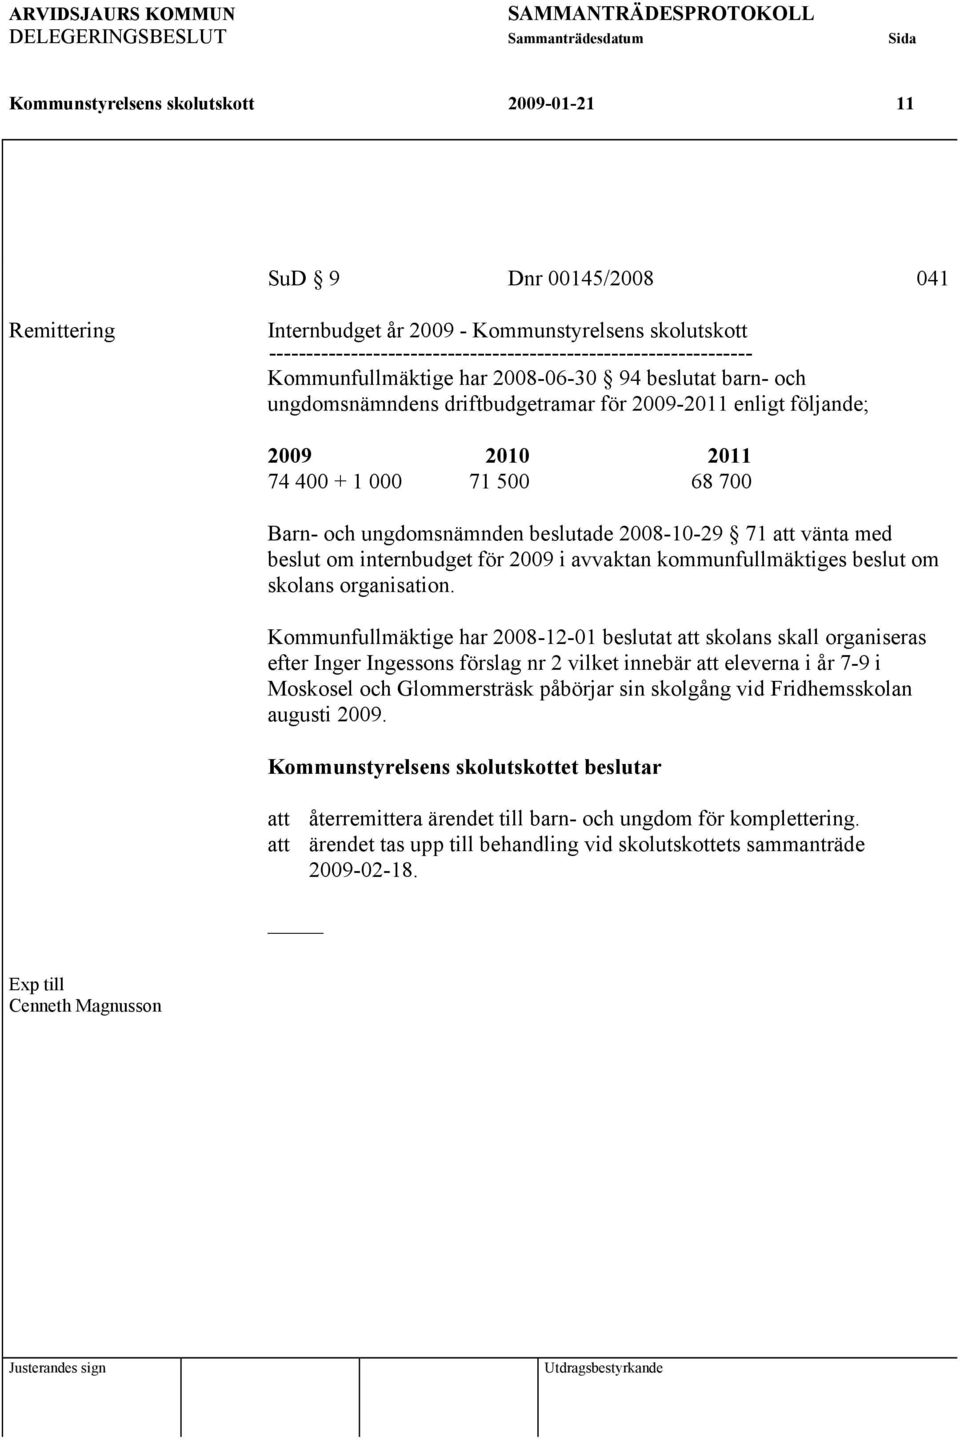 2008-10-29 71 att vänta med beslut om internbudget för 2009 i avvaktan kommunfullmäktiges beslut om skolans organisation.